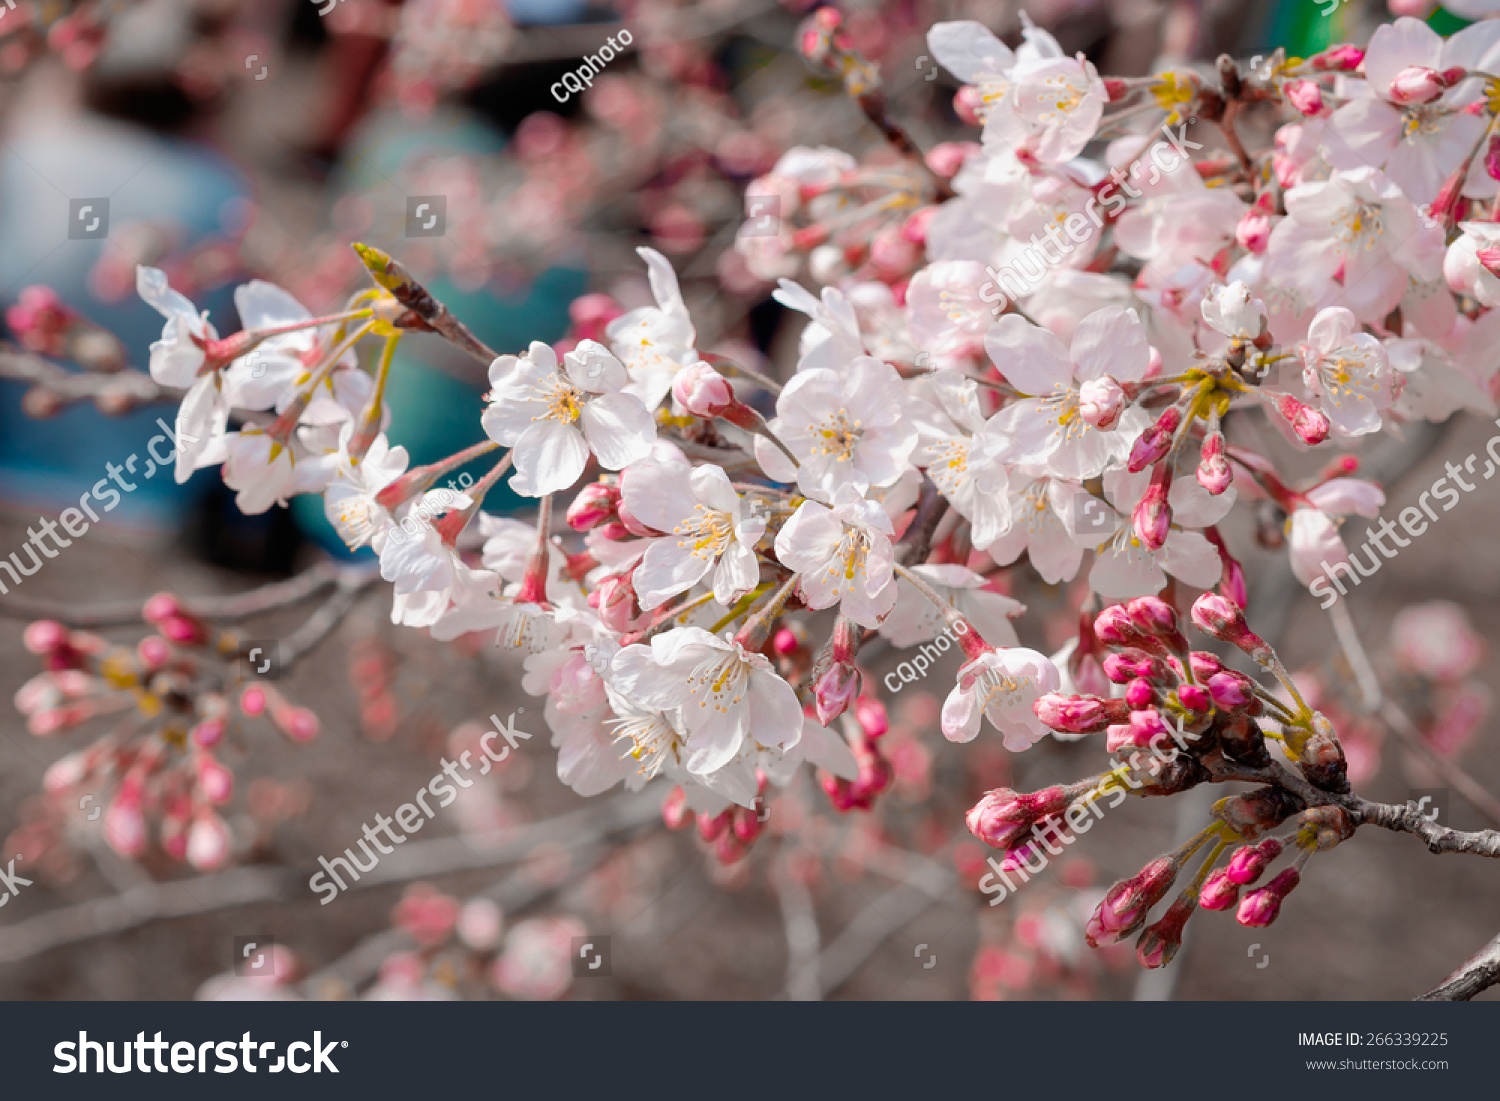 Background Wallpaper Of Cherry Blossom Sakura Flower In Garden